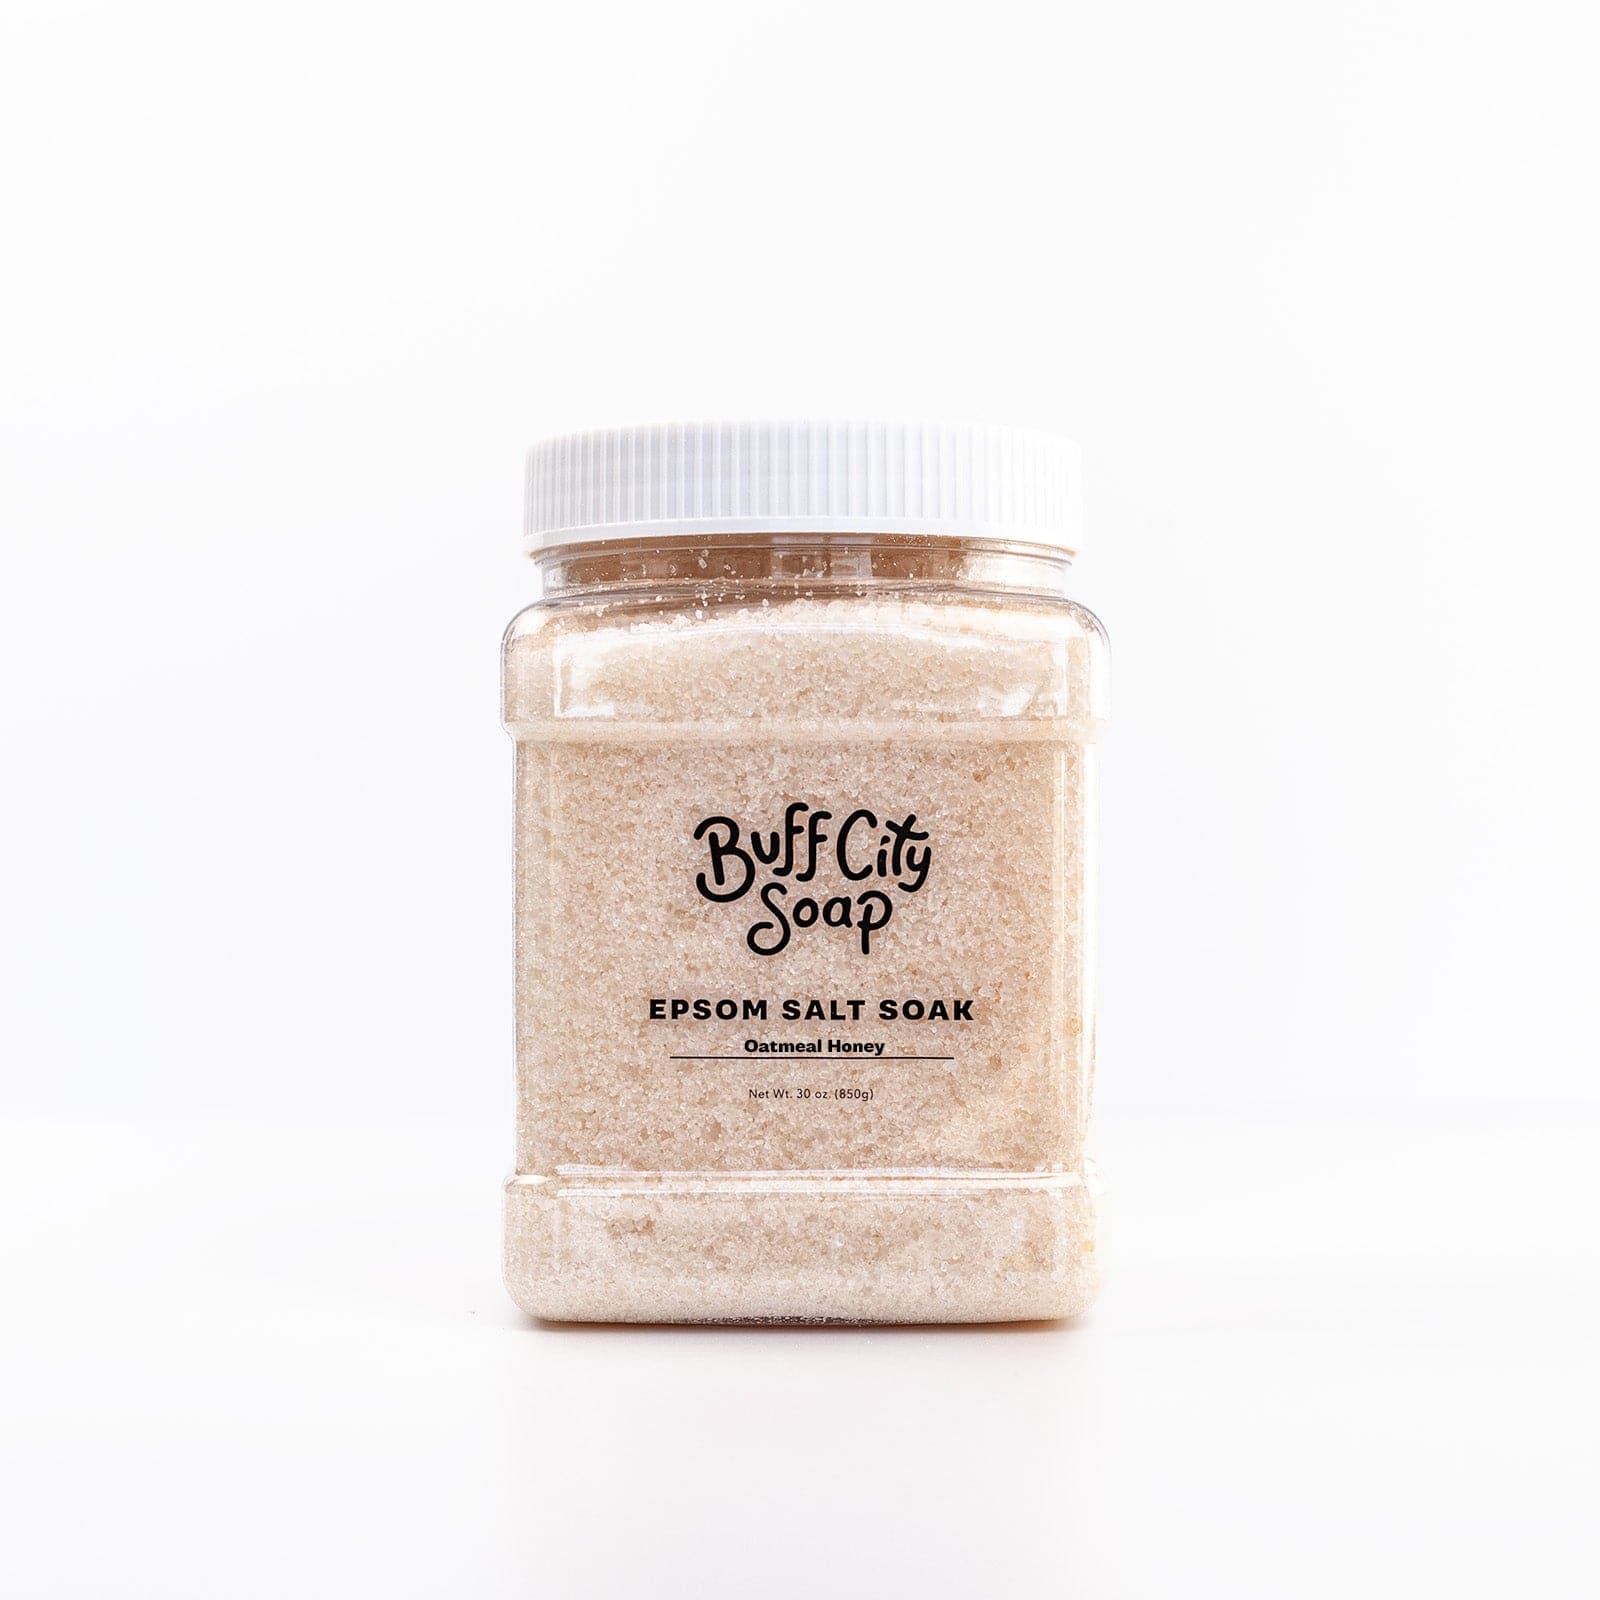 Container of Oatmeal Honey Epsom Salt Soak